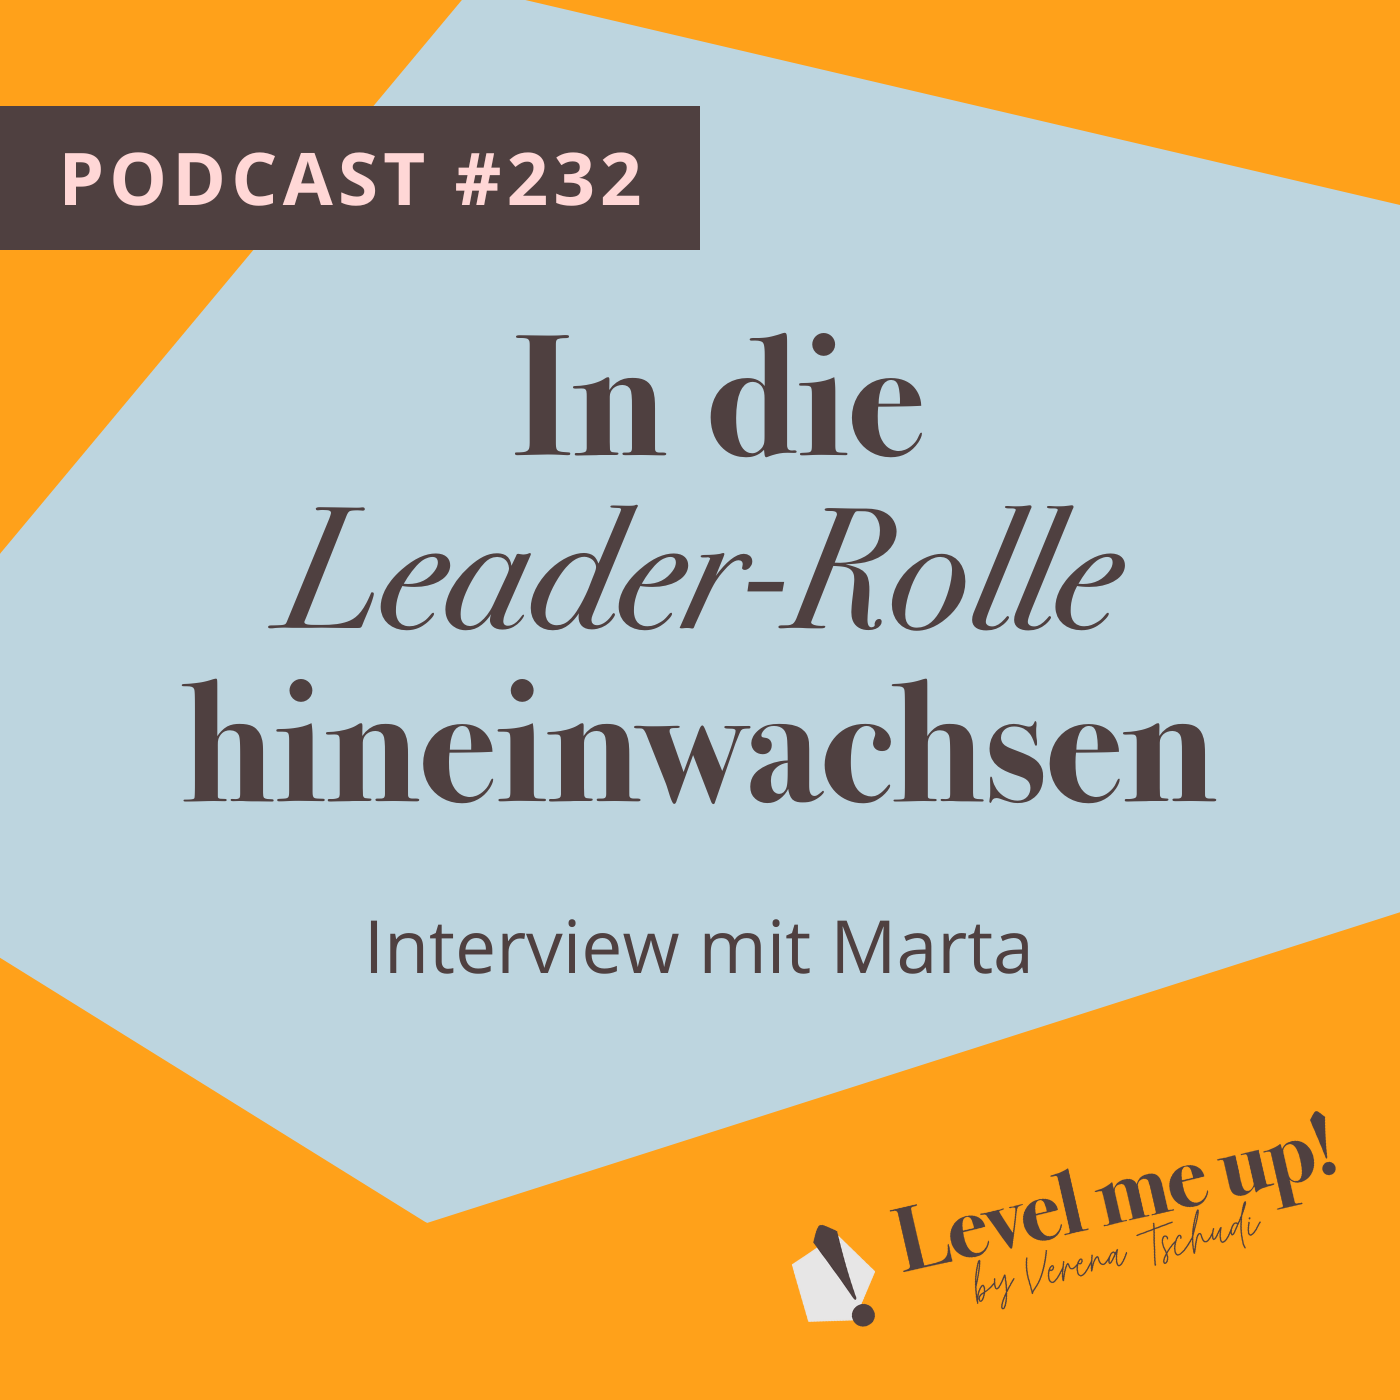 In die Leader-Rolle hineinwachsen, Interview mit Marta